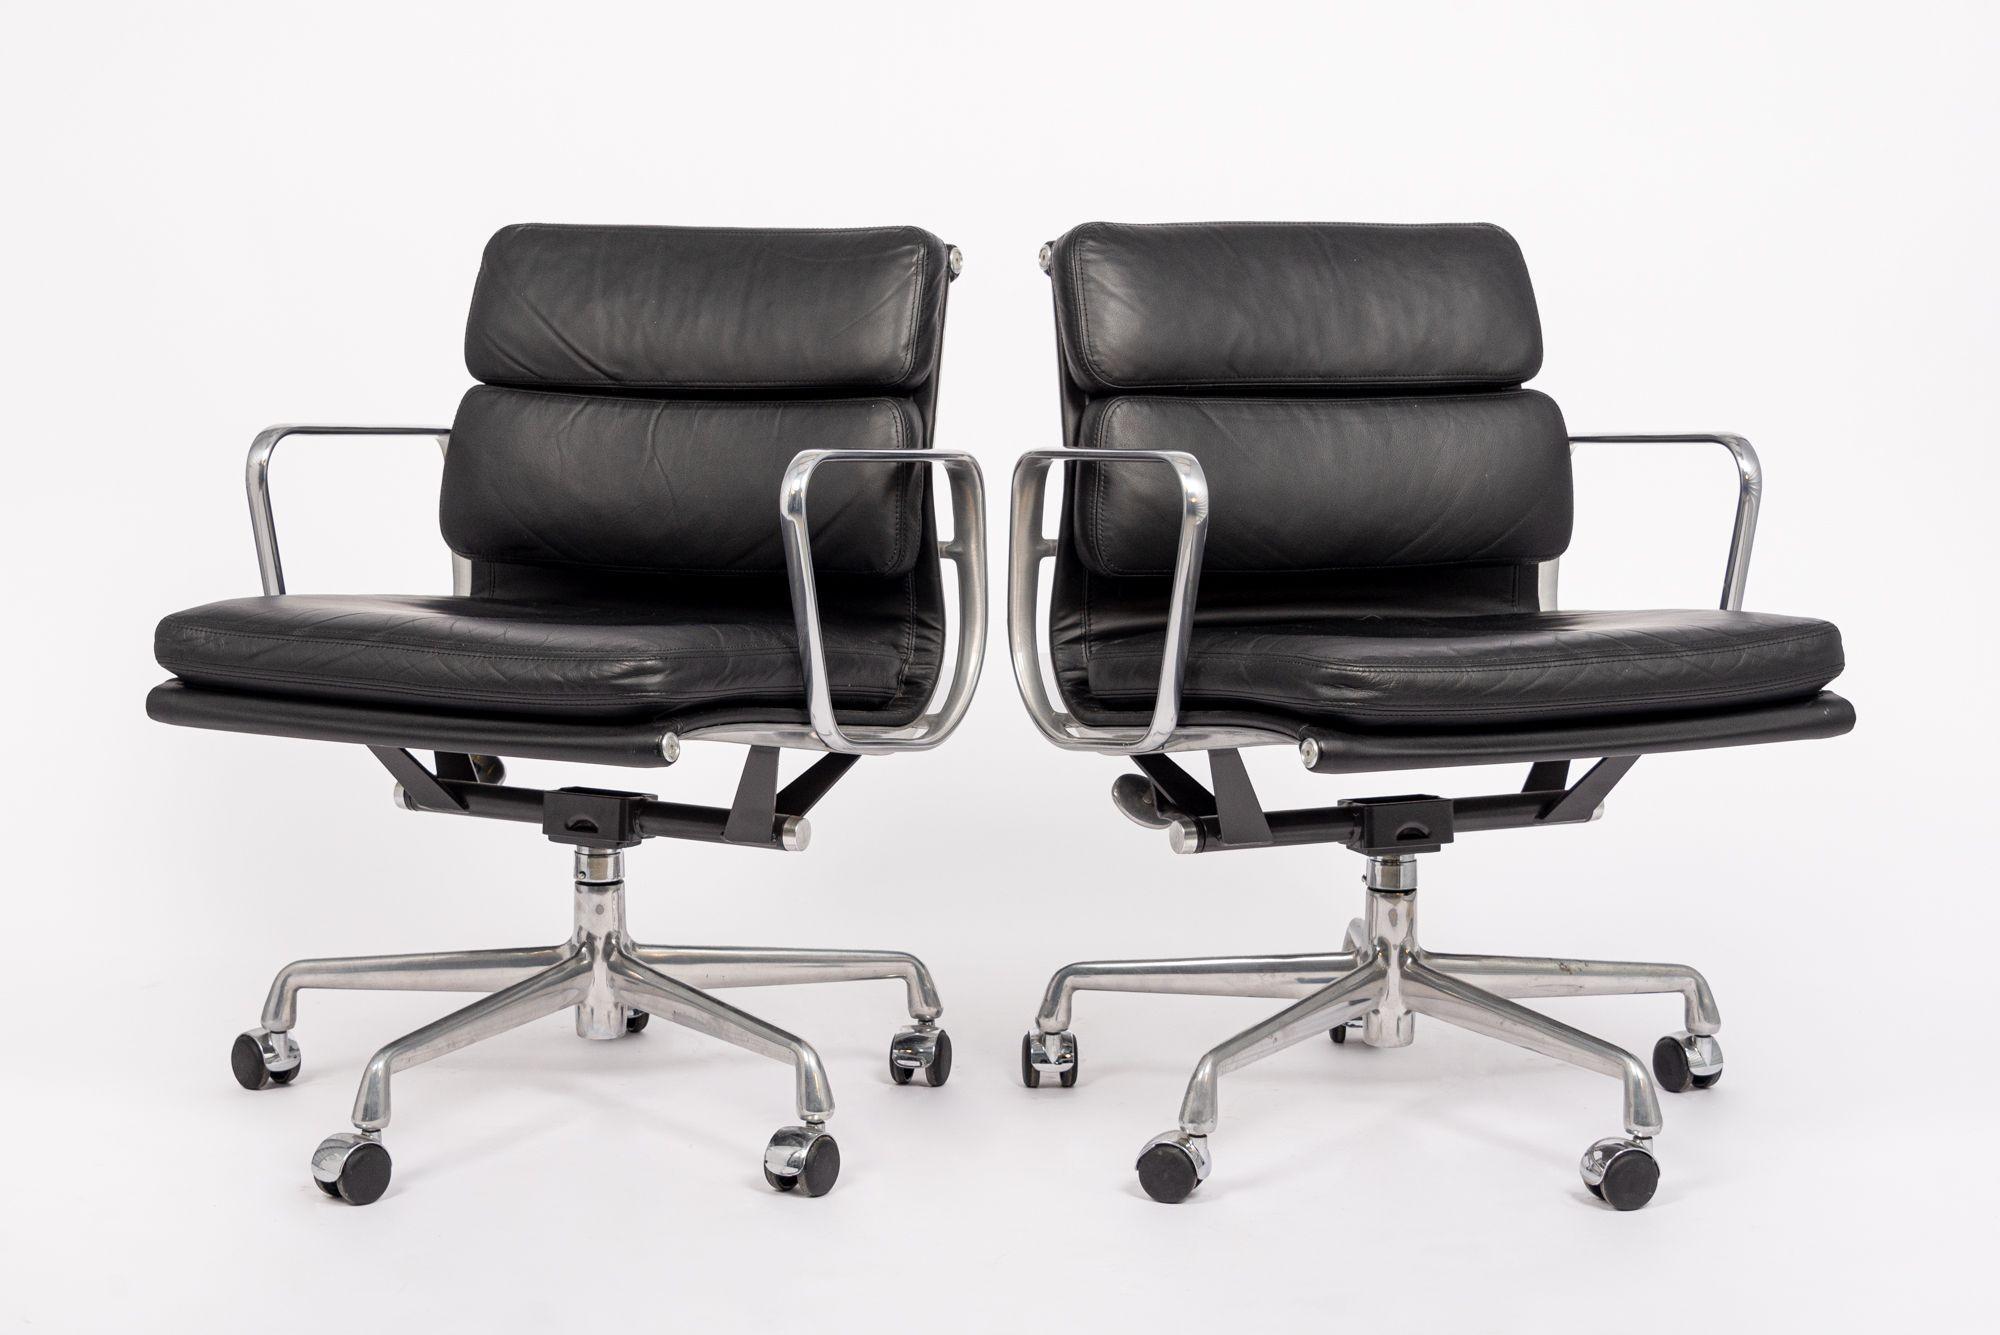 Ces authentiques chaises de bureau en cuir noir Eames for Herman Miller Soft Pad Management Height de l'Aluminum Group Collection ont été fabriquées en 2001. Cette chaise de bureau classique et moderne du milieu du siècle a été introduite pour la